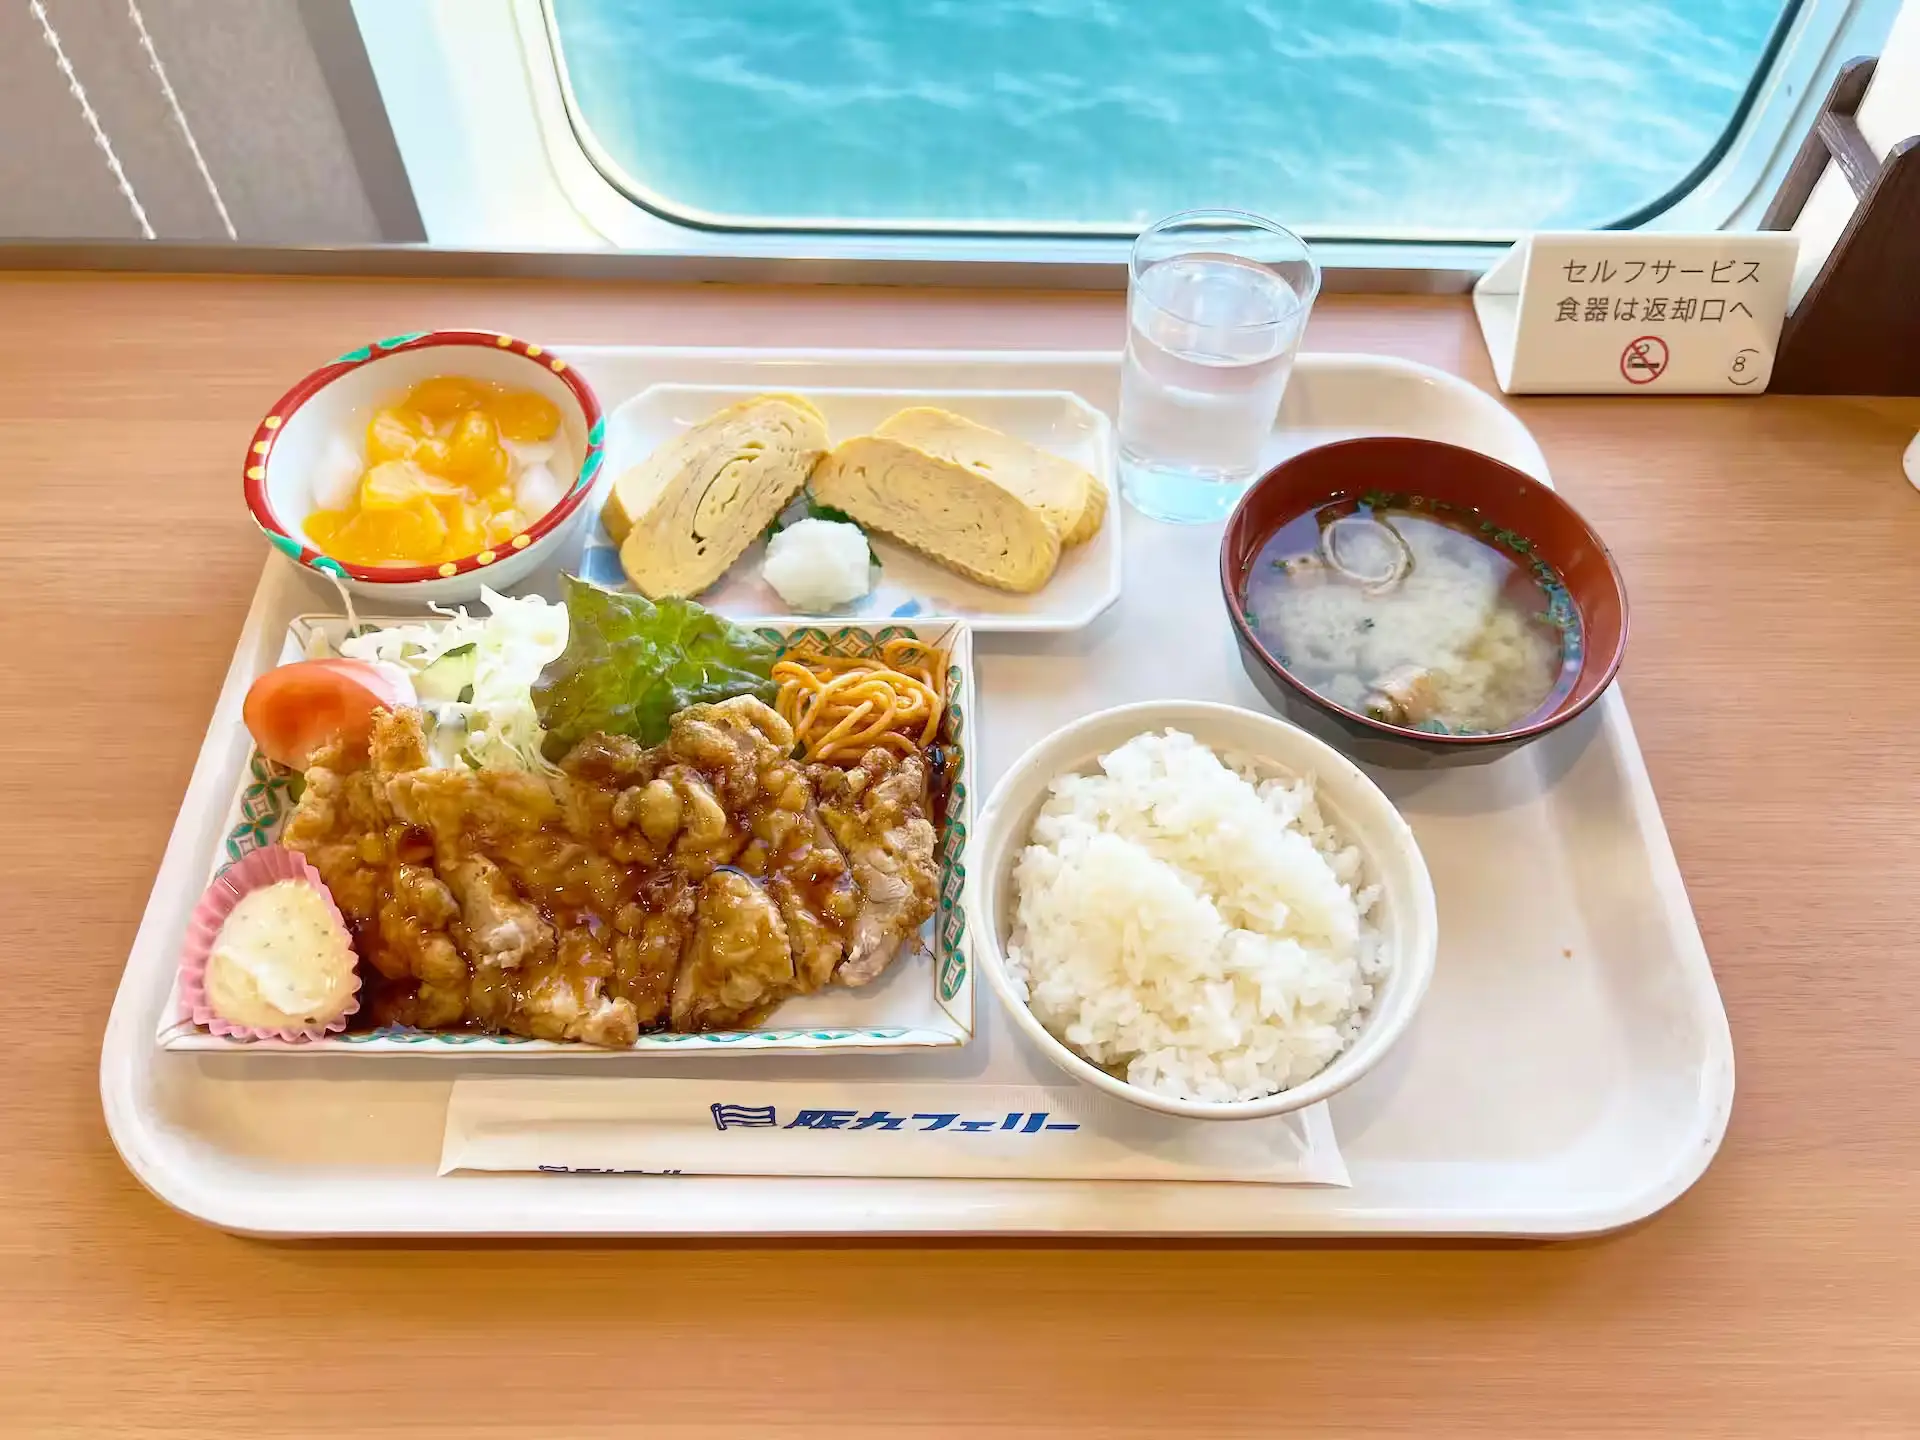 阪九フェリーひびき船内レストランの夕食料理